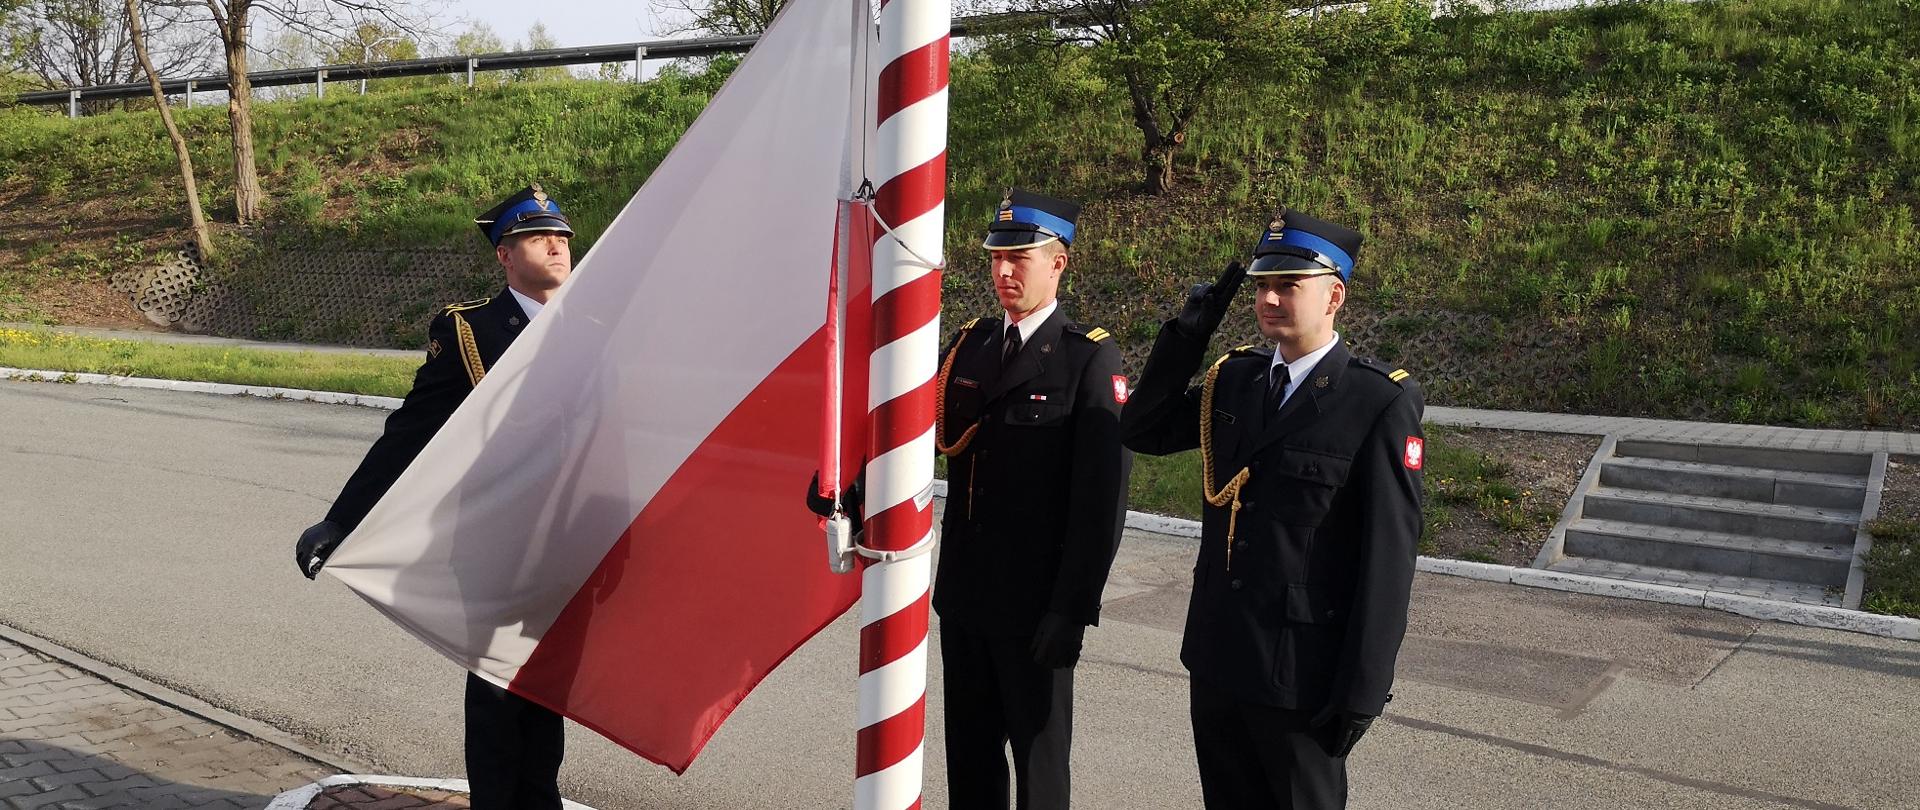 Zdjęcie przedstawia poczet flagowy w trakcie podnoszenia flagi państwowej. Poczet składa się z 3 strażaków.